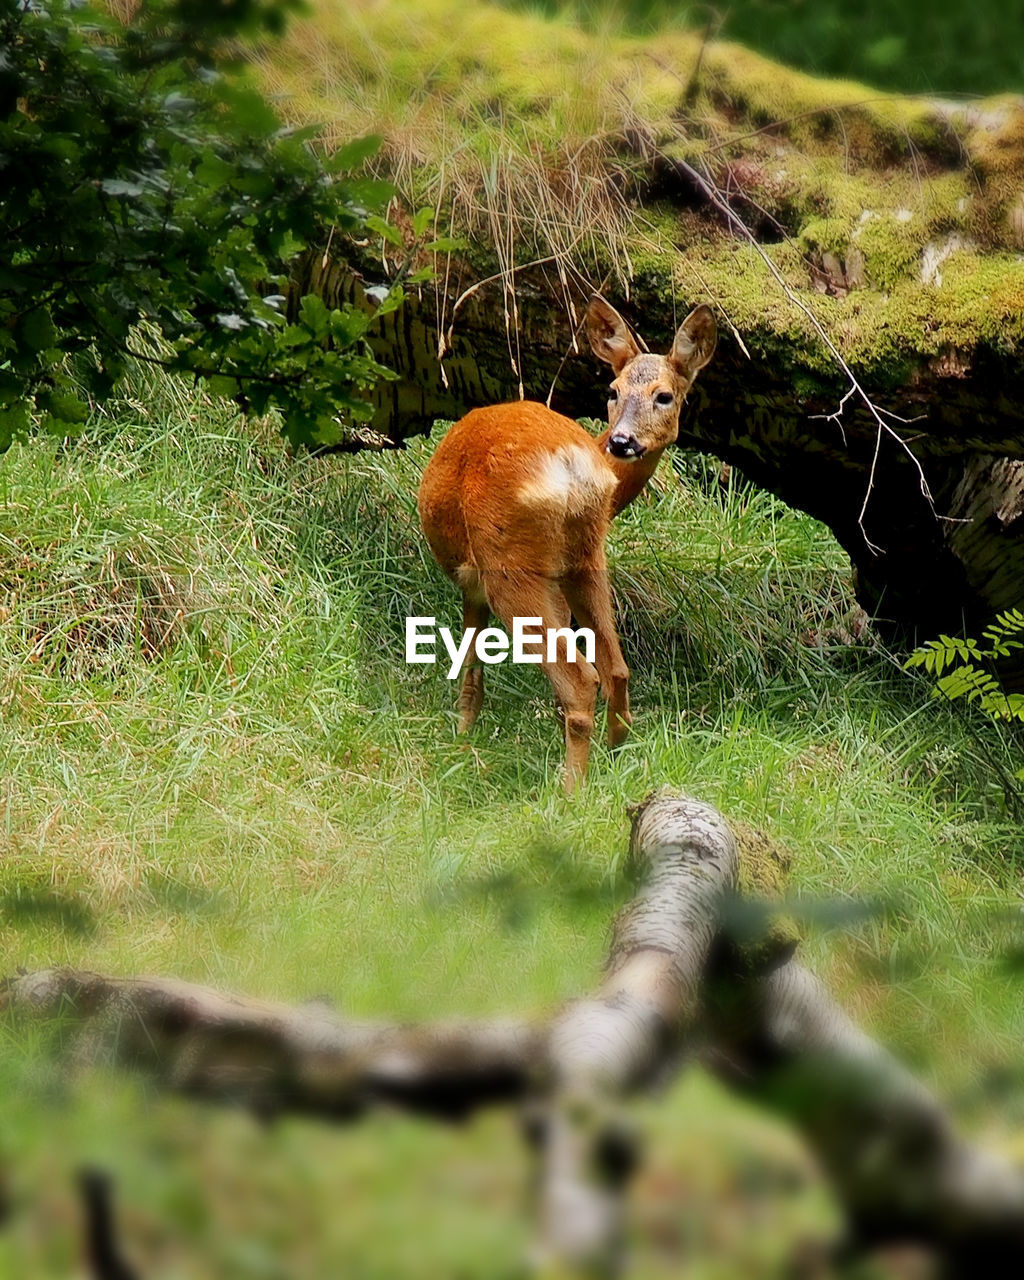 Deer looking away on grassy field